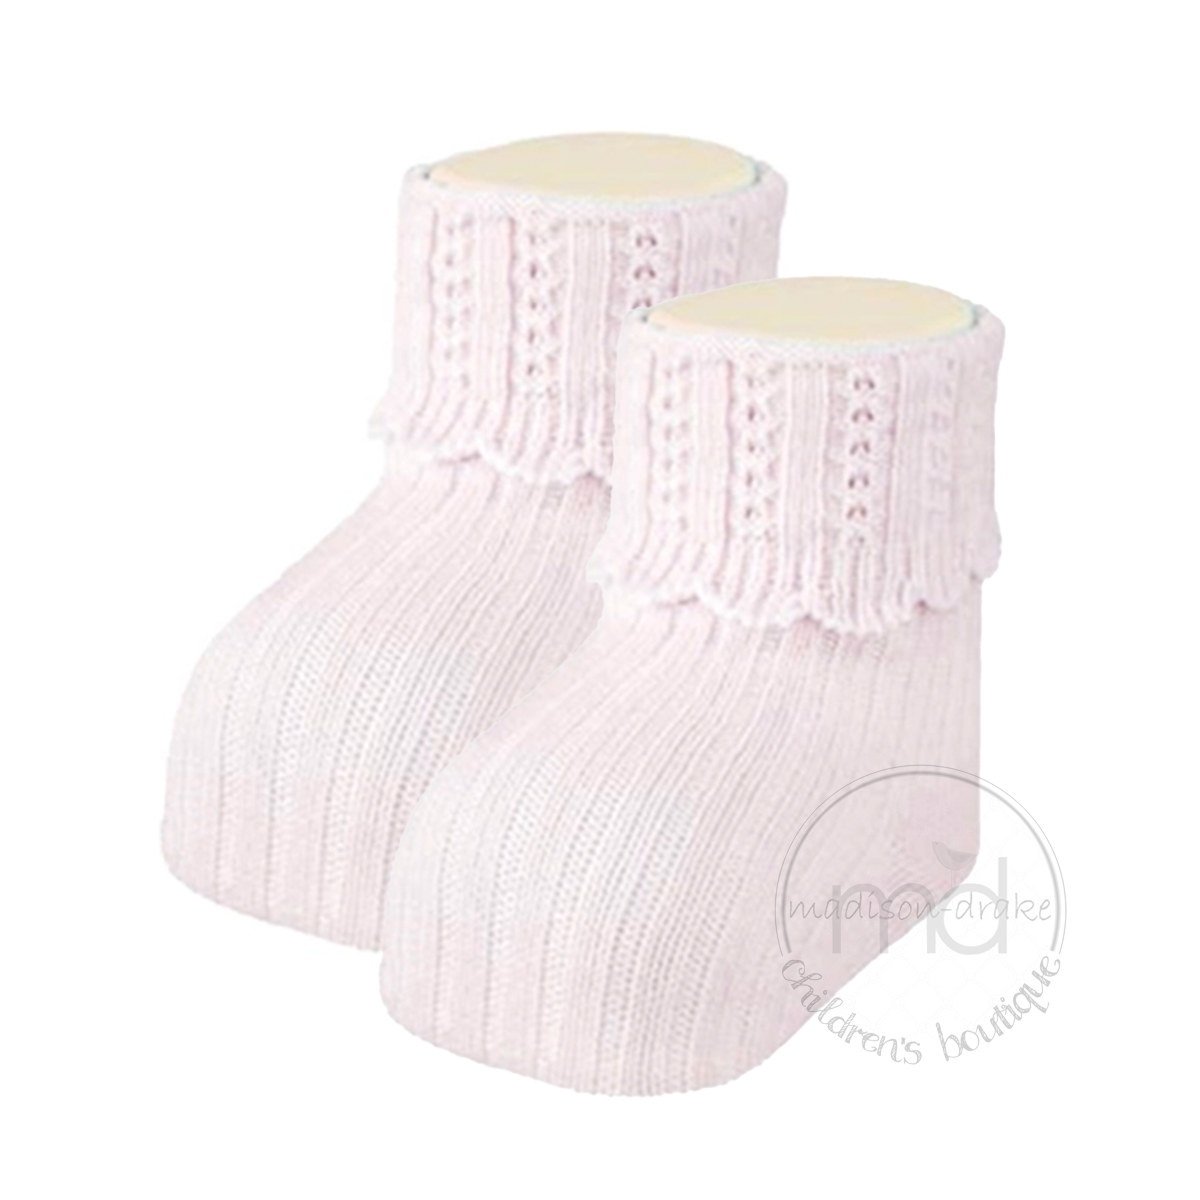 Newborn Folded Cuff Socks - Soft Pink